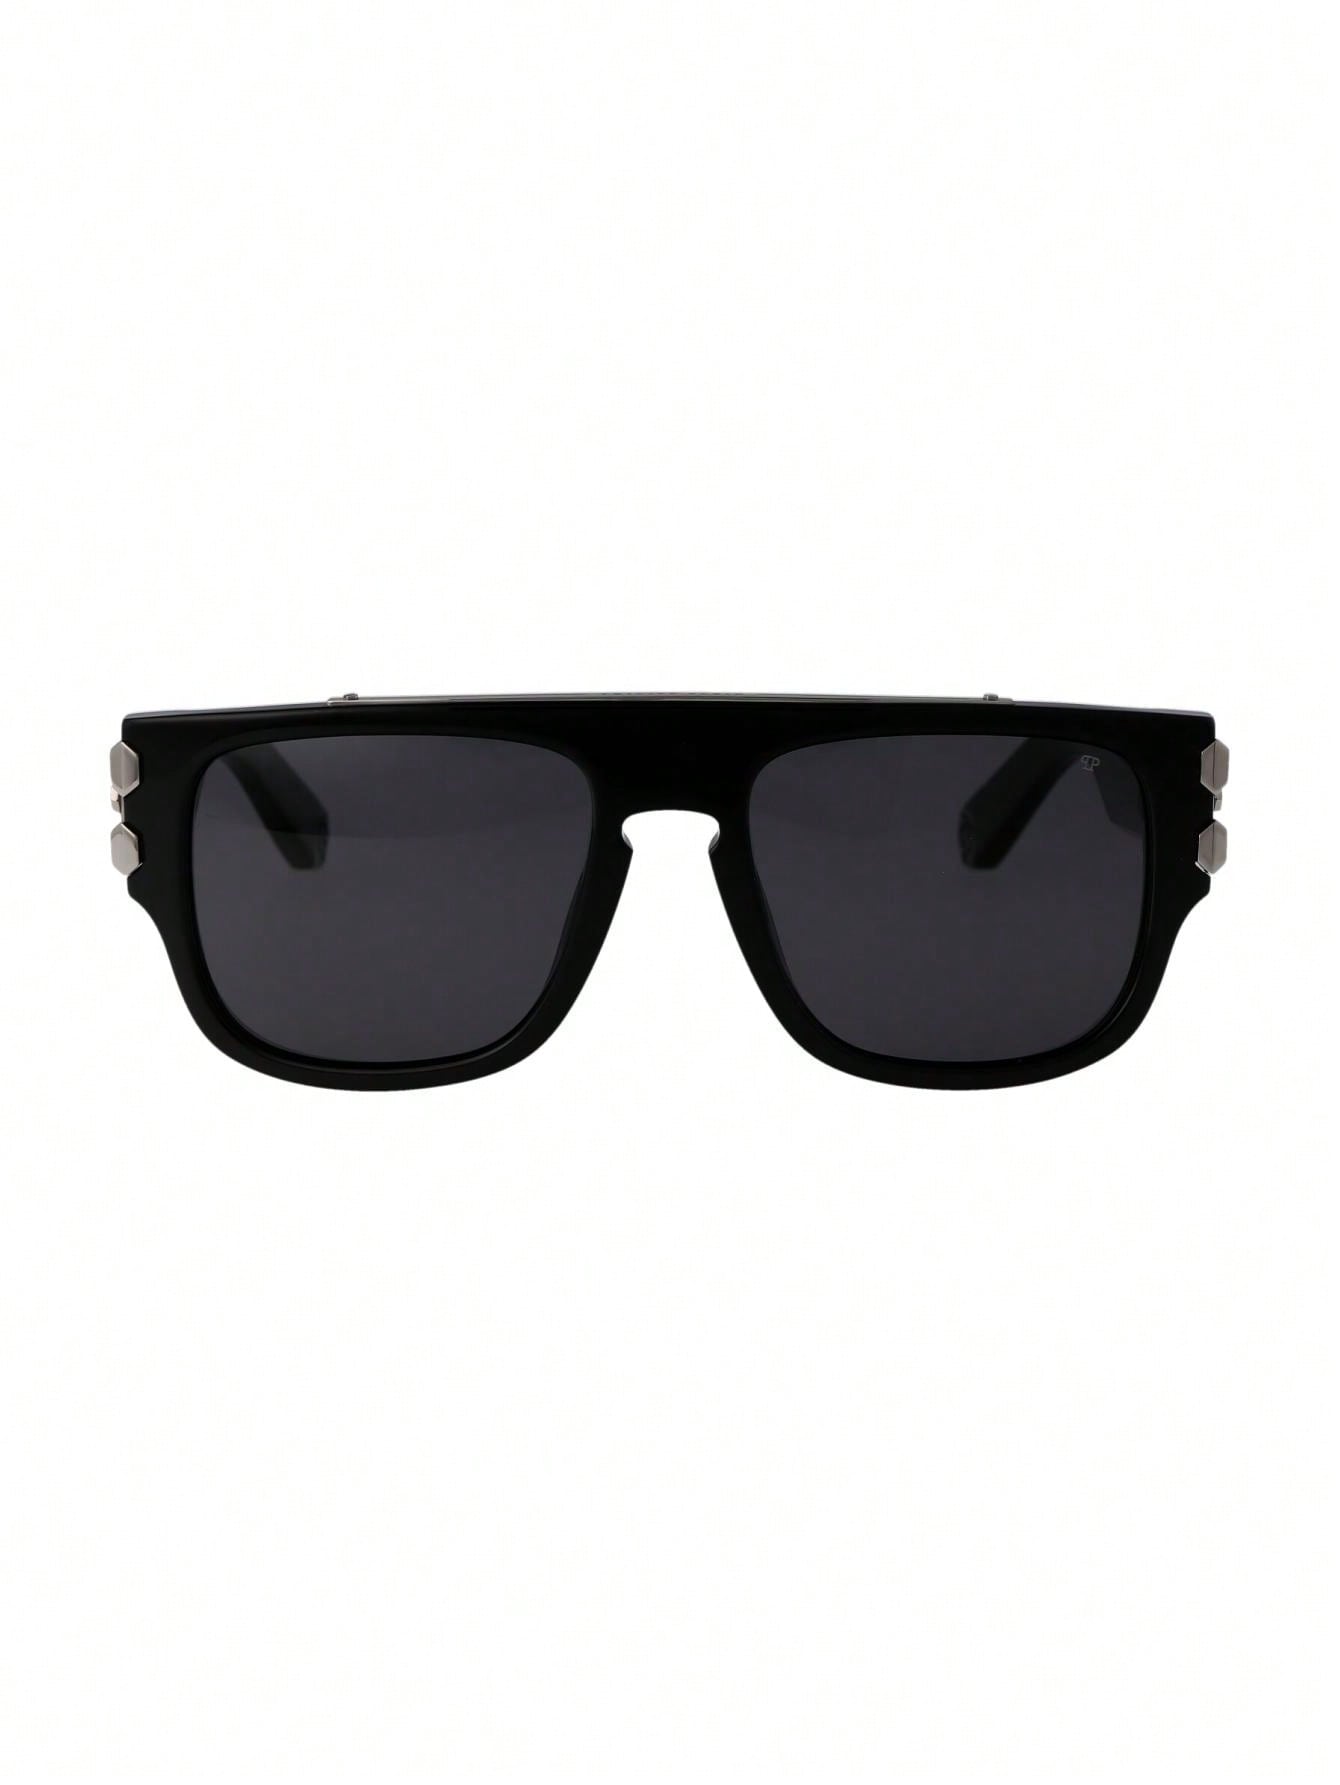 Мужские солнцезащитные очки Philipp Plein DECOR SPP011X0700, многоцветный